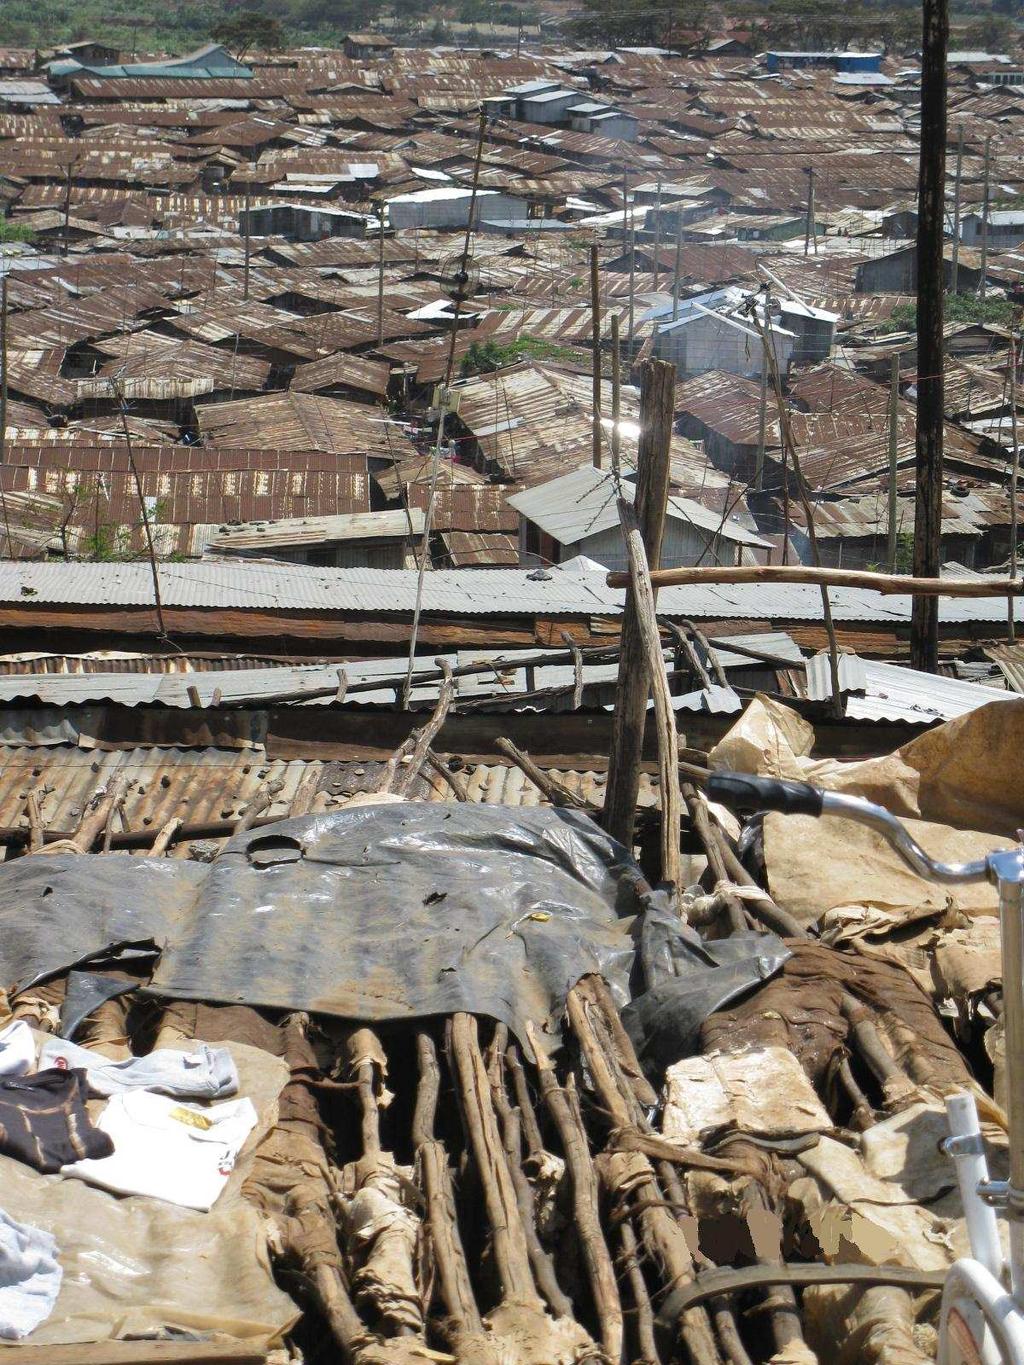 : Aktuelle Entwicklungen in Kenia Slumbildung: Ein Slum ist ein räumlich segregiertes Wohngebietin städtischen Agglomerationen, das bauliche Verfallserscheinungen, einen hohen Anteil an